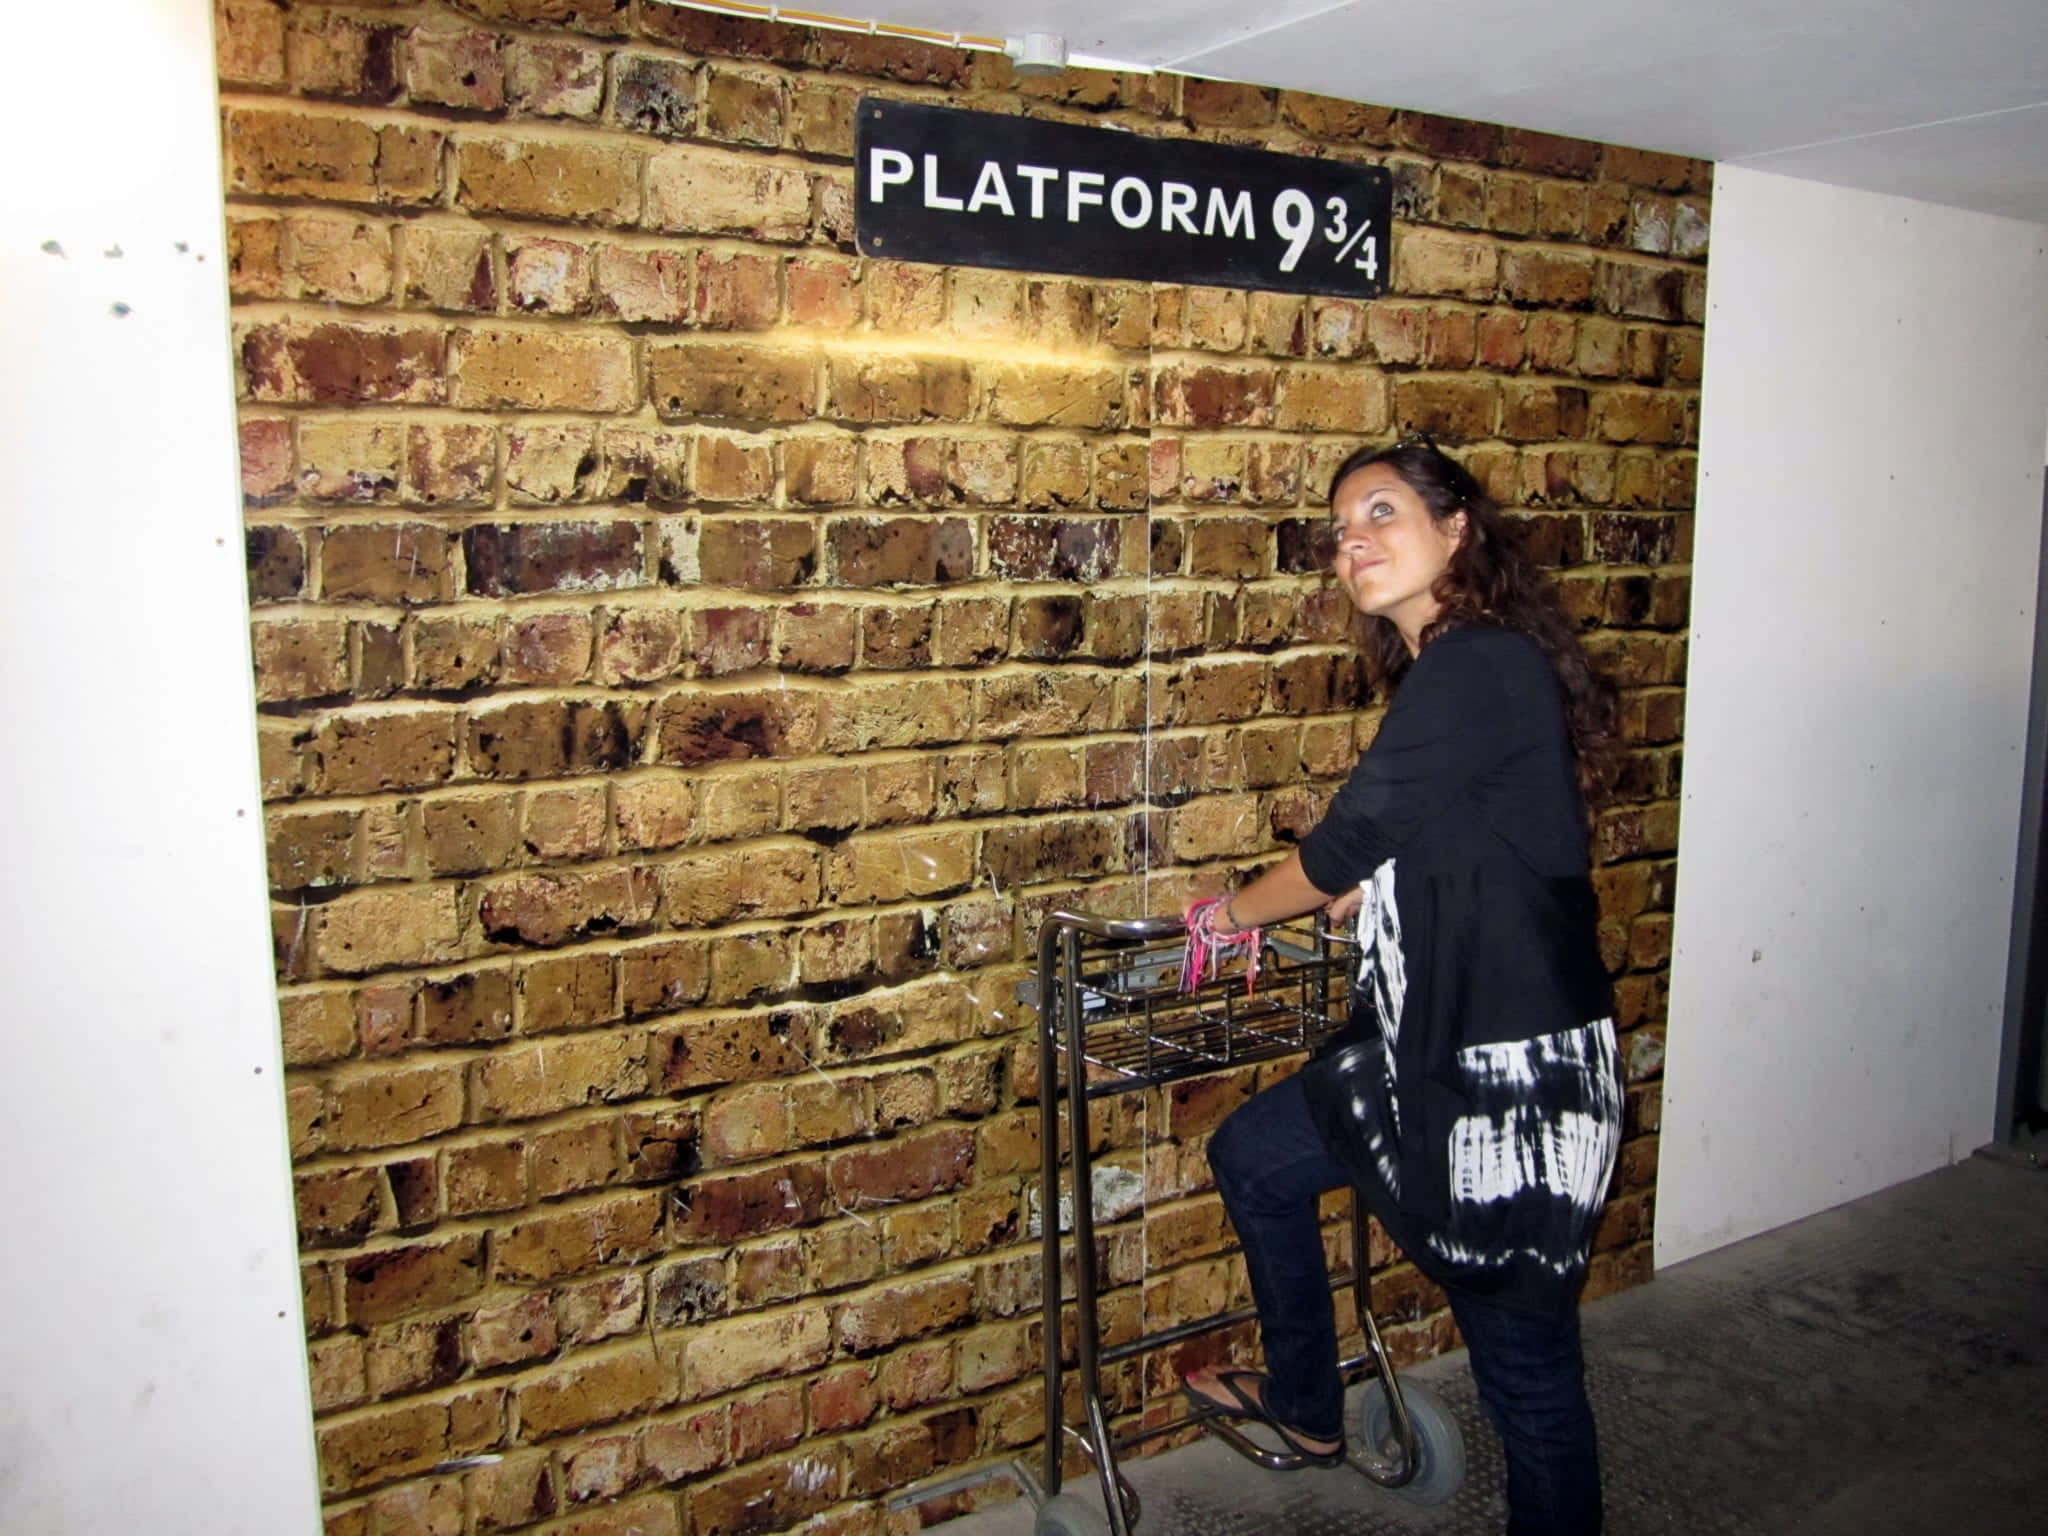 A magical journey awaits at Platform 9 3/4 Wallpaper